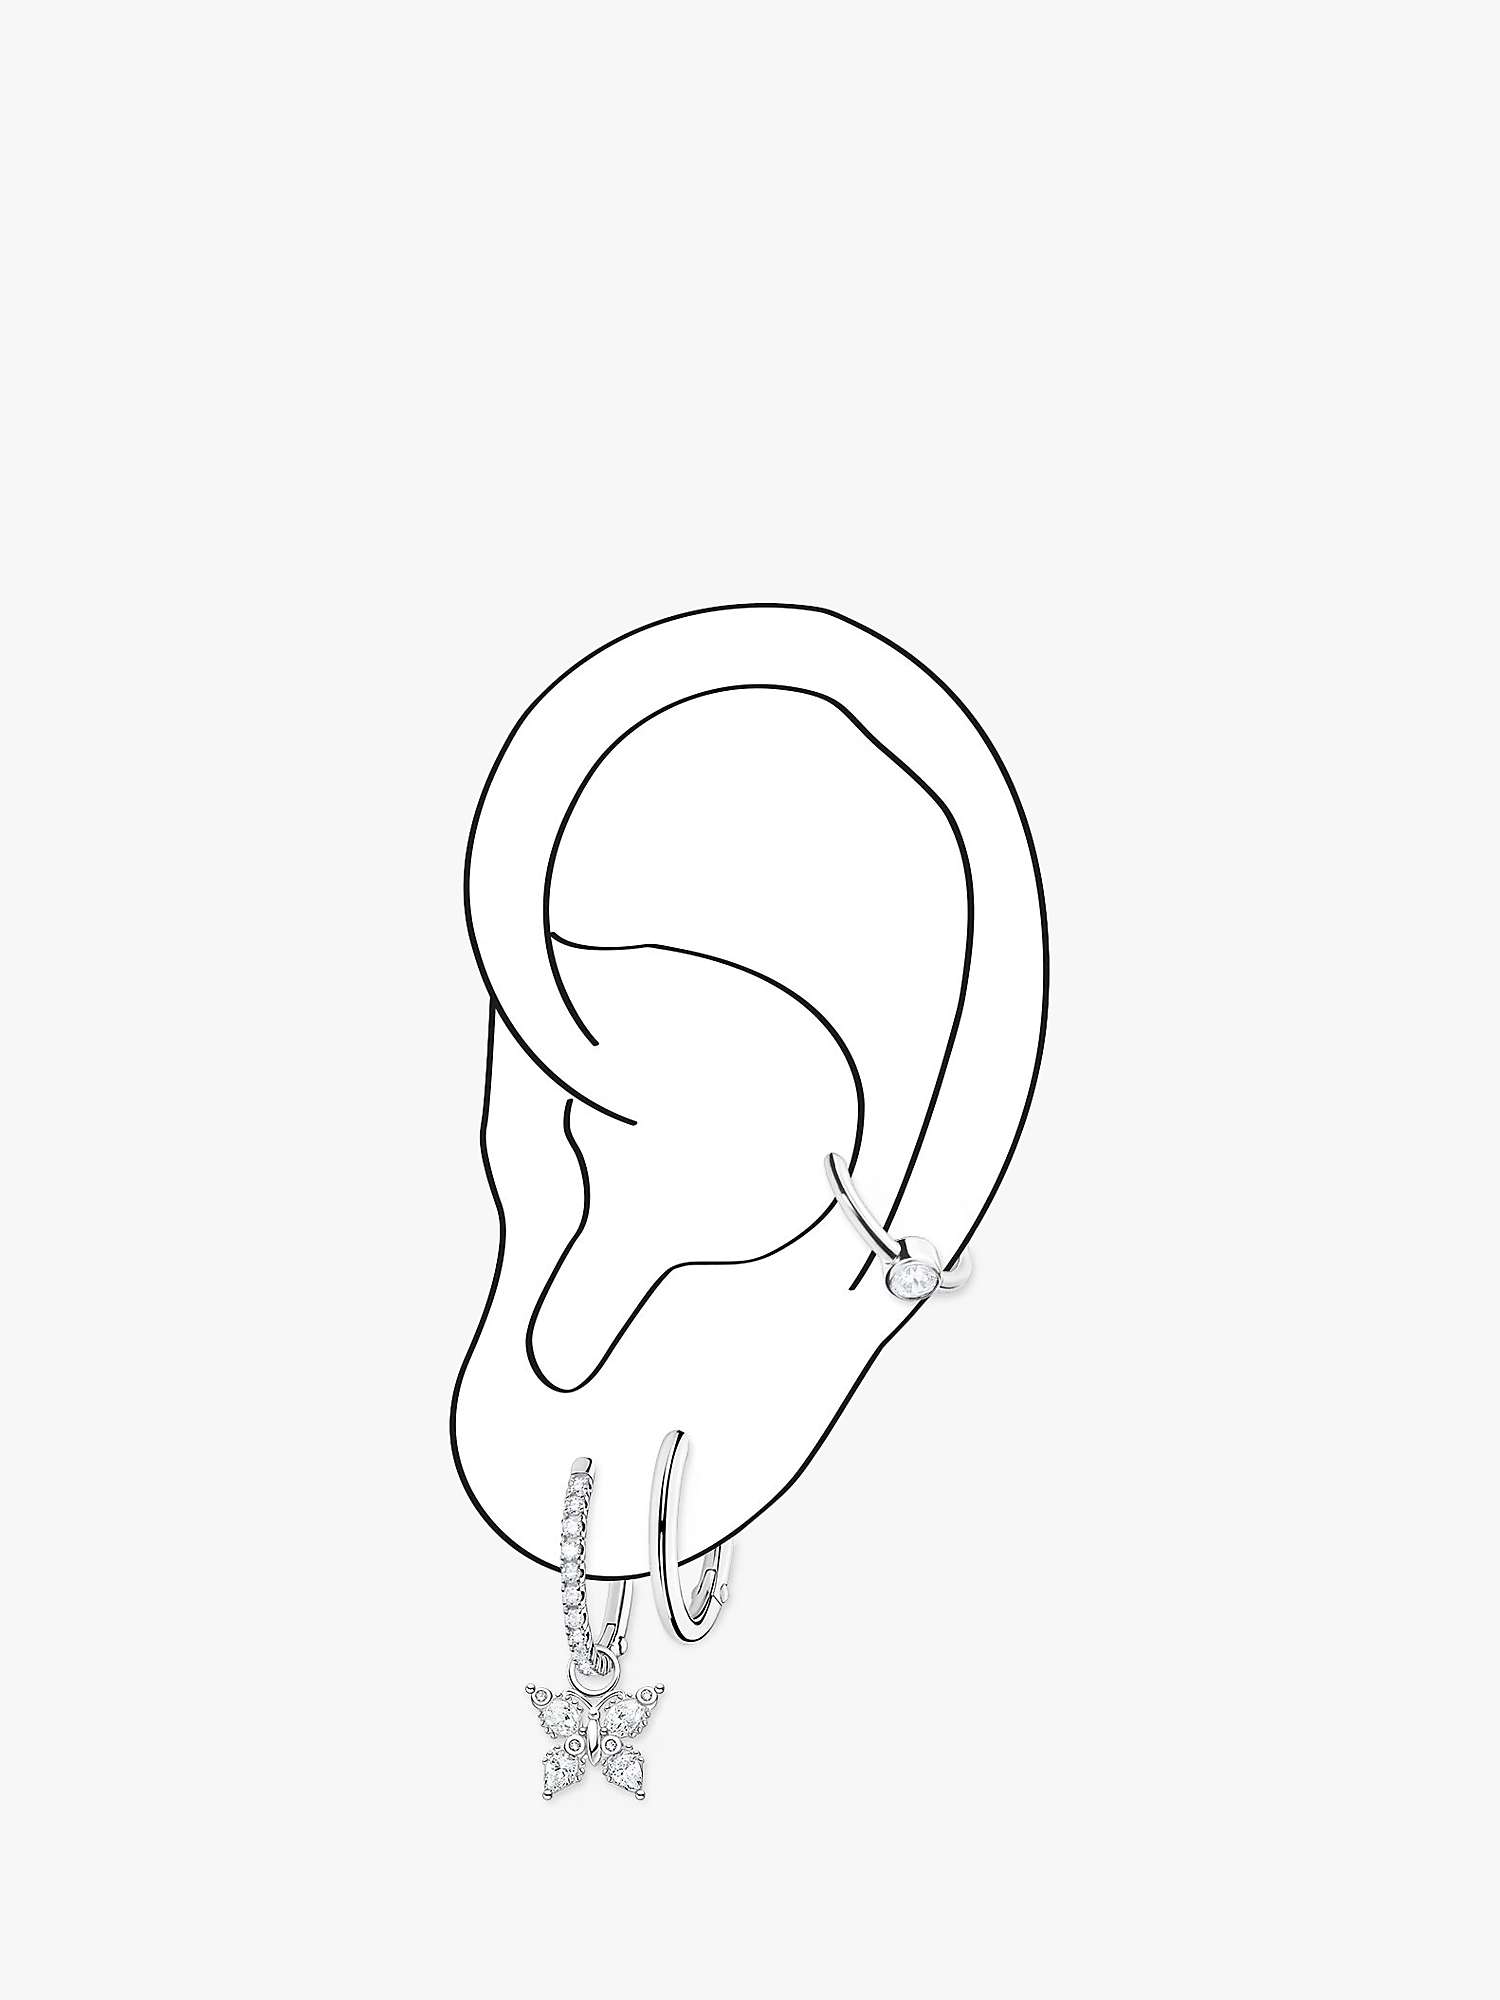 Buy THOMAS SABO Cubic Zirconia Single Ear Hoop Earring, Silver Online at johnlewis.com